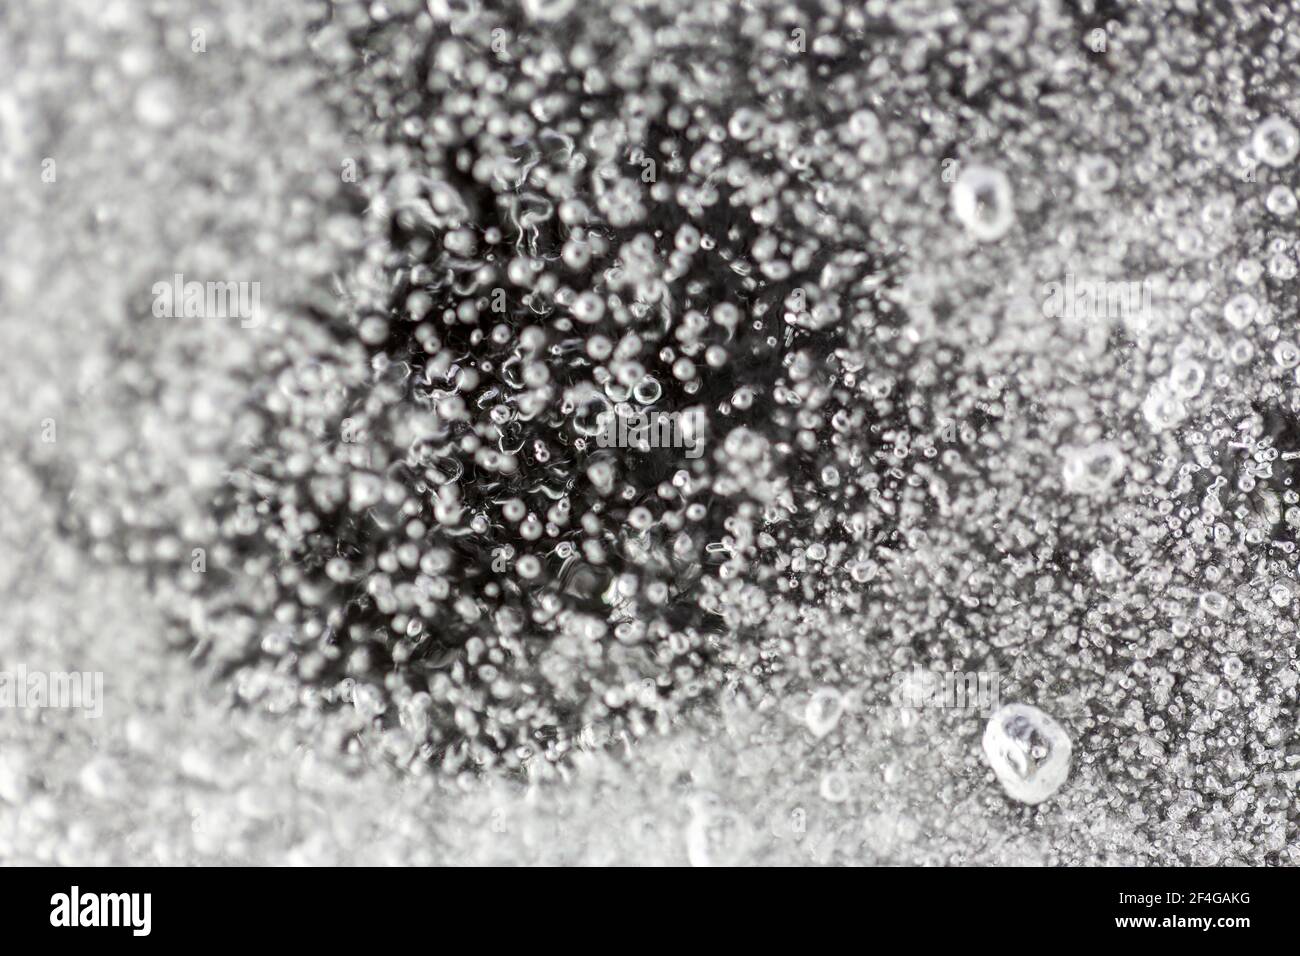 Photo macro de petites bulles d'air piégées dans une feuille de glace dans le jardin, prise avec un flash stroboscopique pour éclairer la glace Banque D'Images